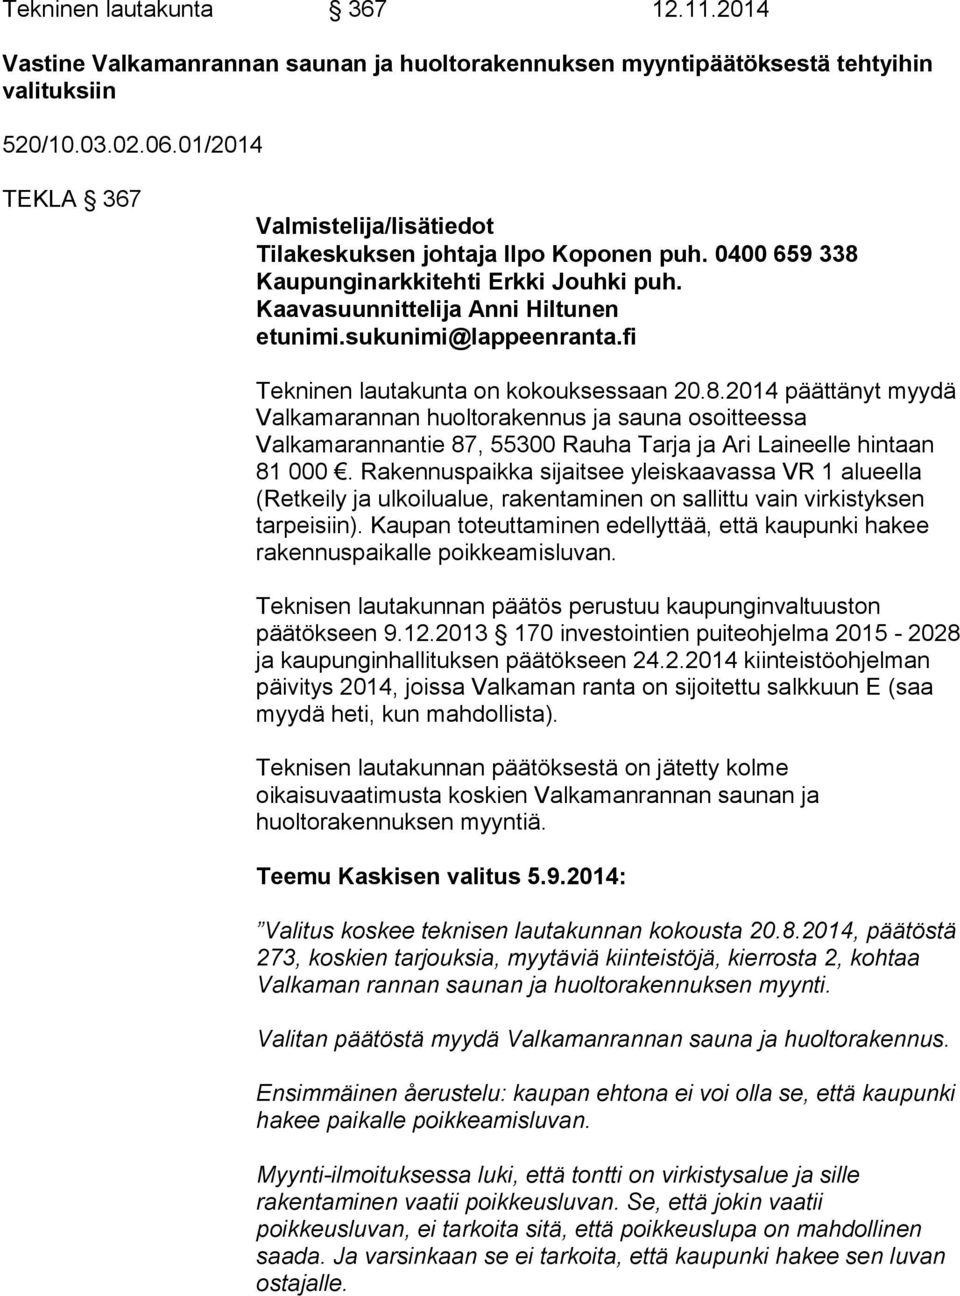 fi Tekninen lautakunta on kokouksessaan 20.8.2014 päättänyt myydä Valkamarannan huoltorakennus ja sauna osoitteessa Valkamarannantie 87, 55300 Rauha Tarja ja Ari Laineelle hintaan 81 000.